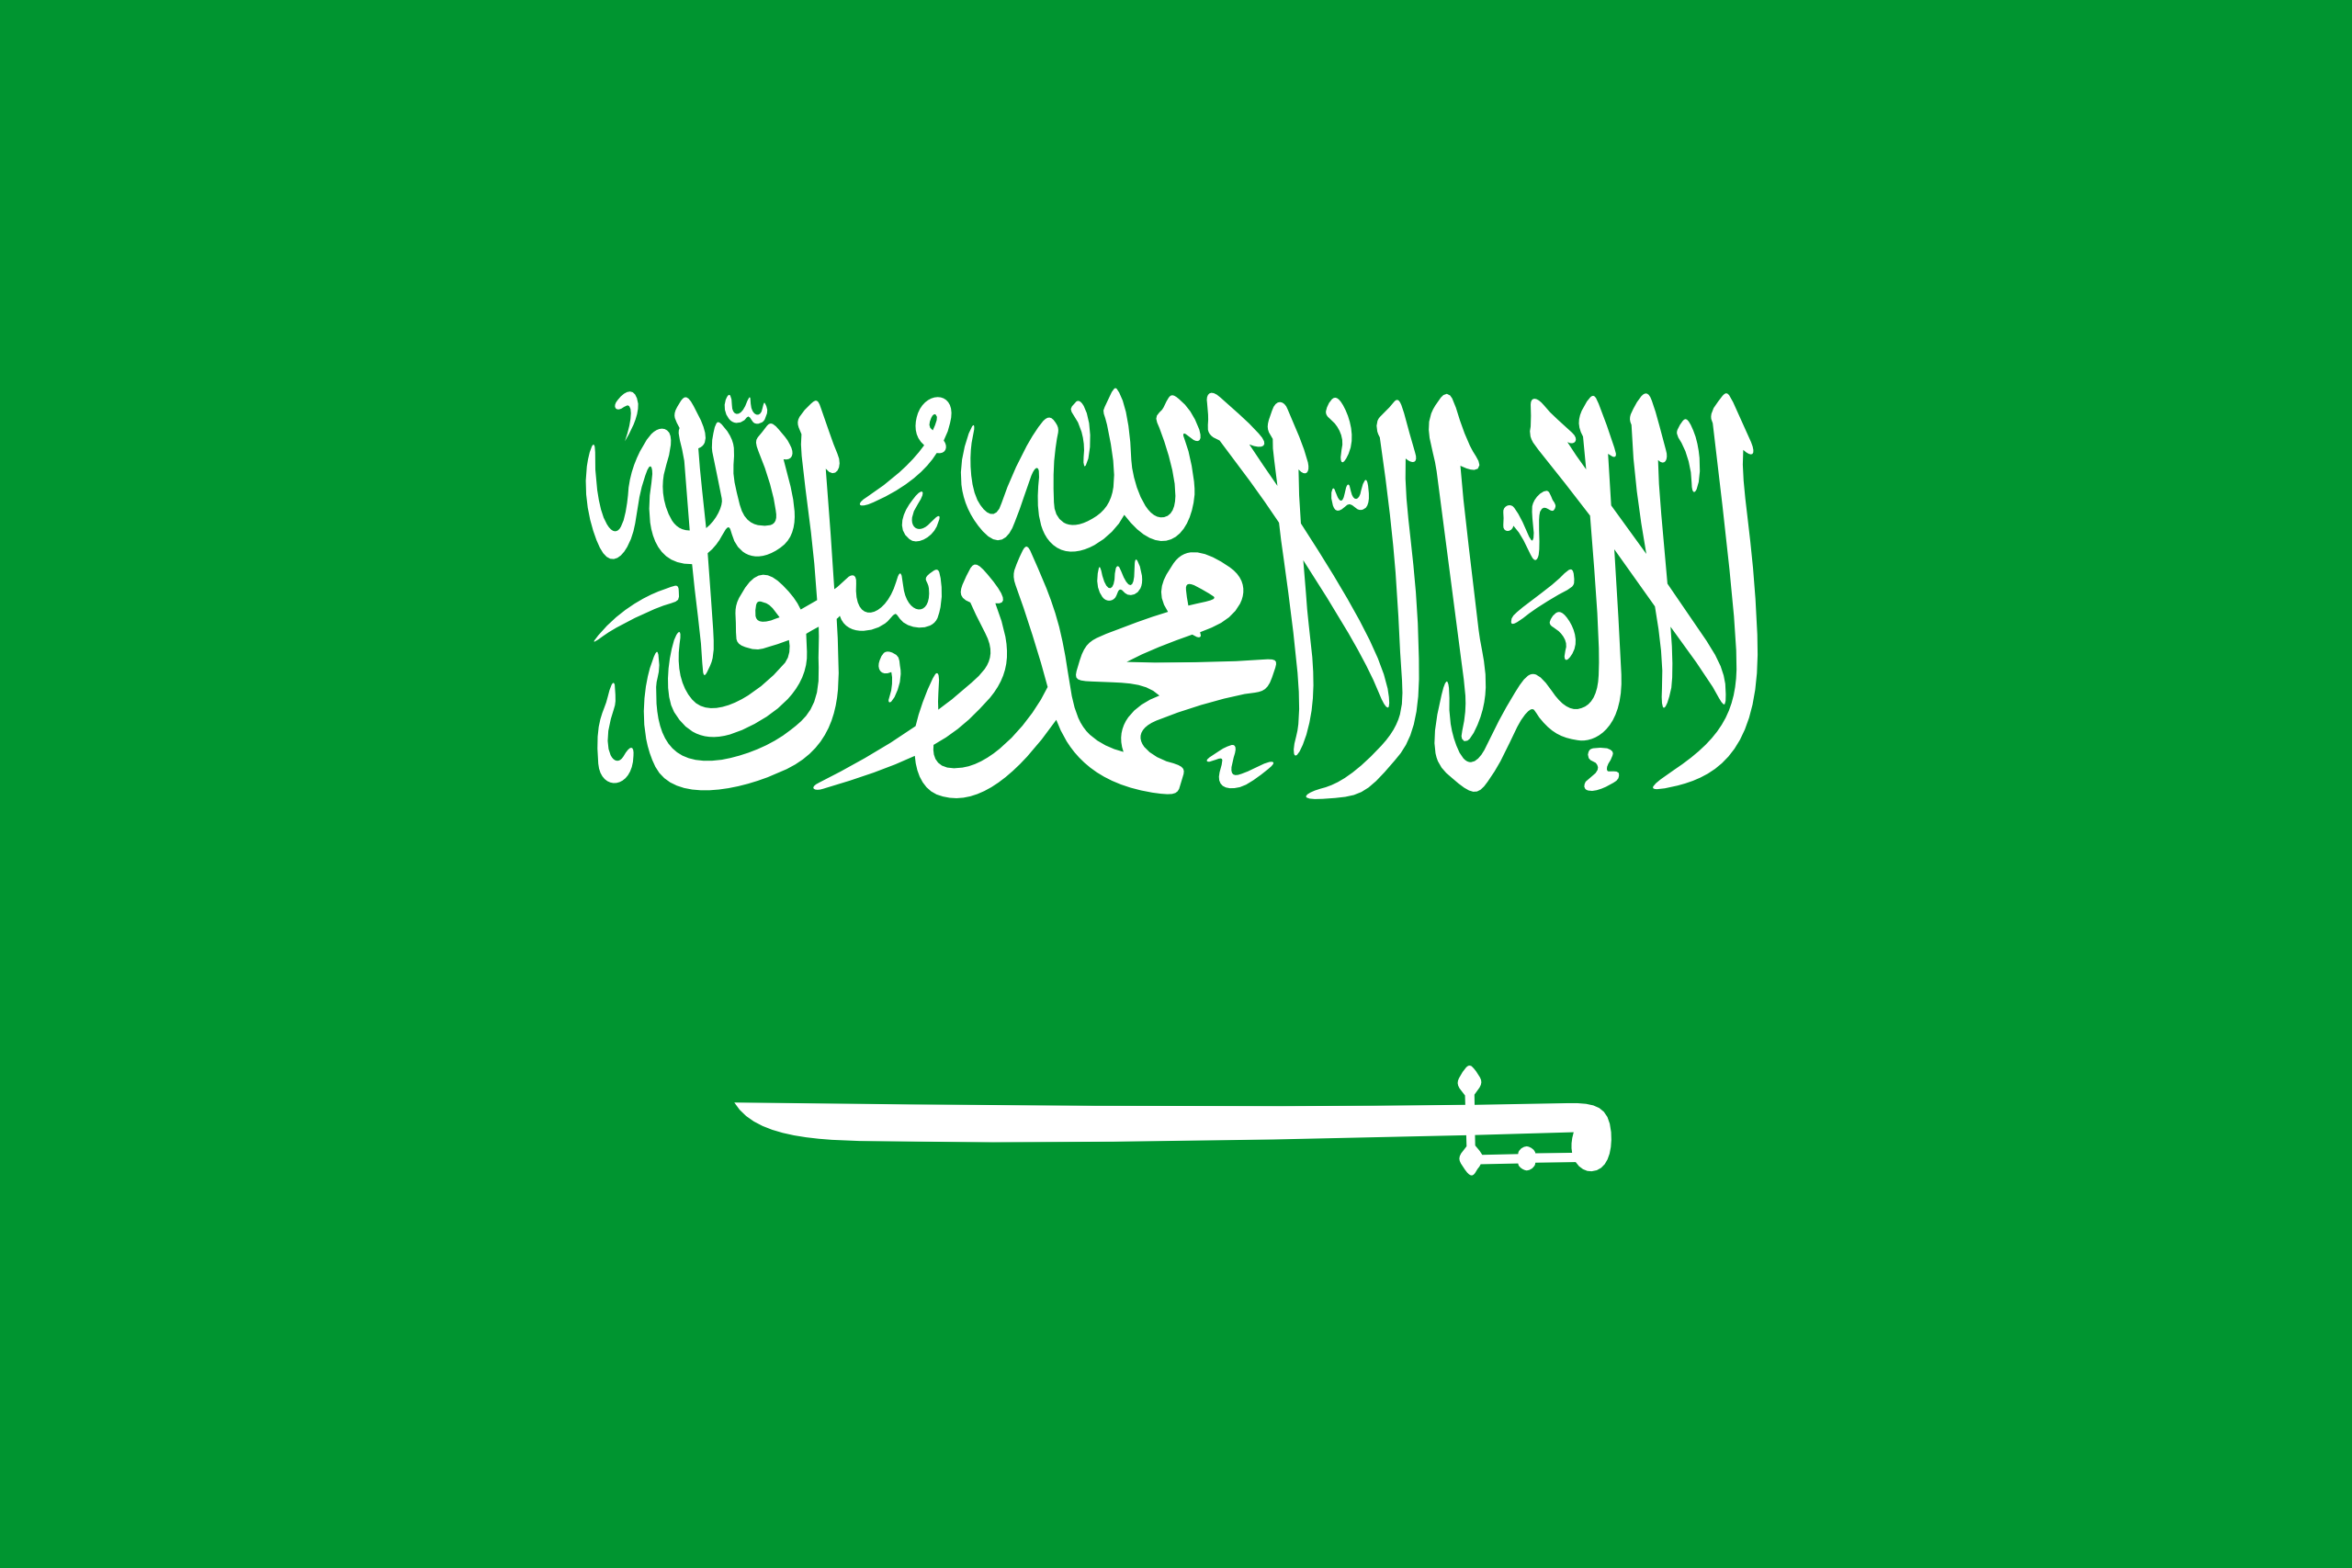 Le drapeau est sur fond vert qui représente la couleur de l'Islam. Il comporte une inscription qui est la chahada (la profession de foi musulmane) et un sabre blanc faisant écho à la conquête du pays par Ibn Saoud.